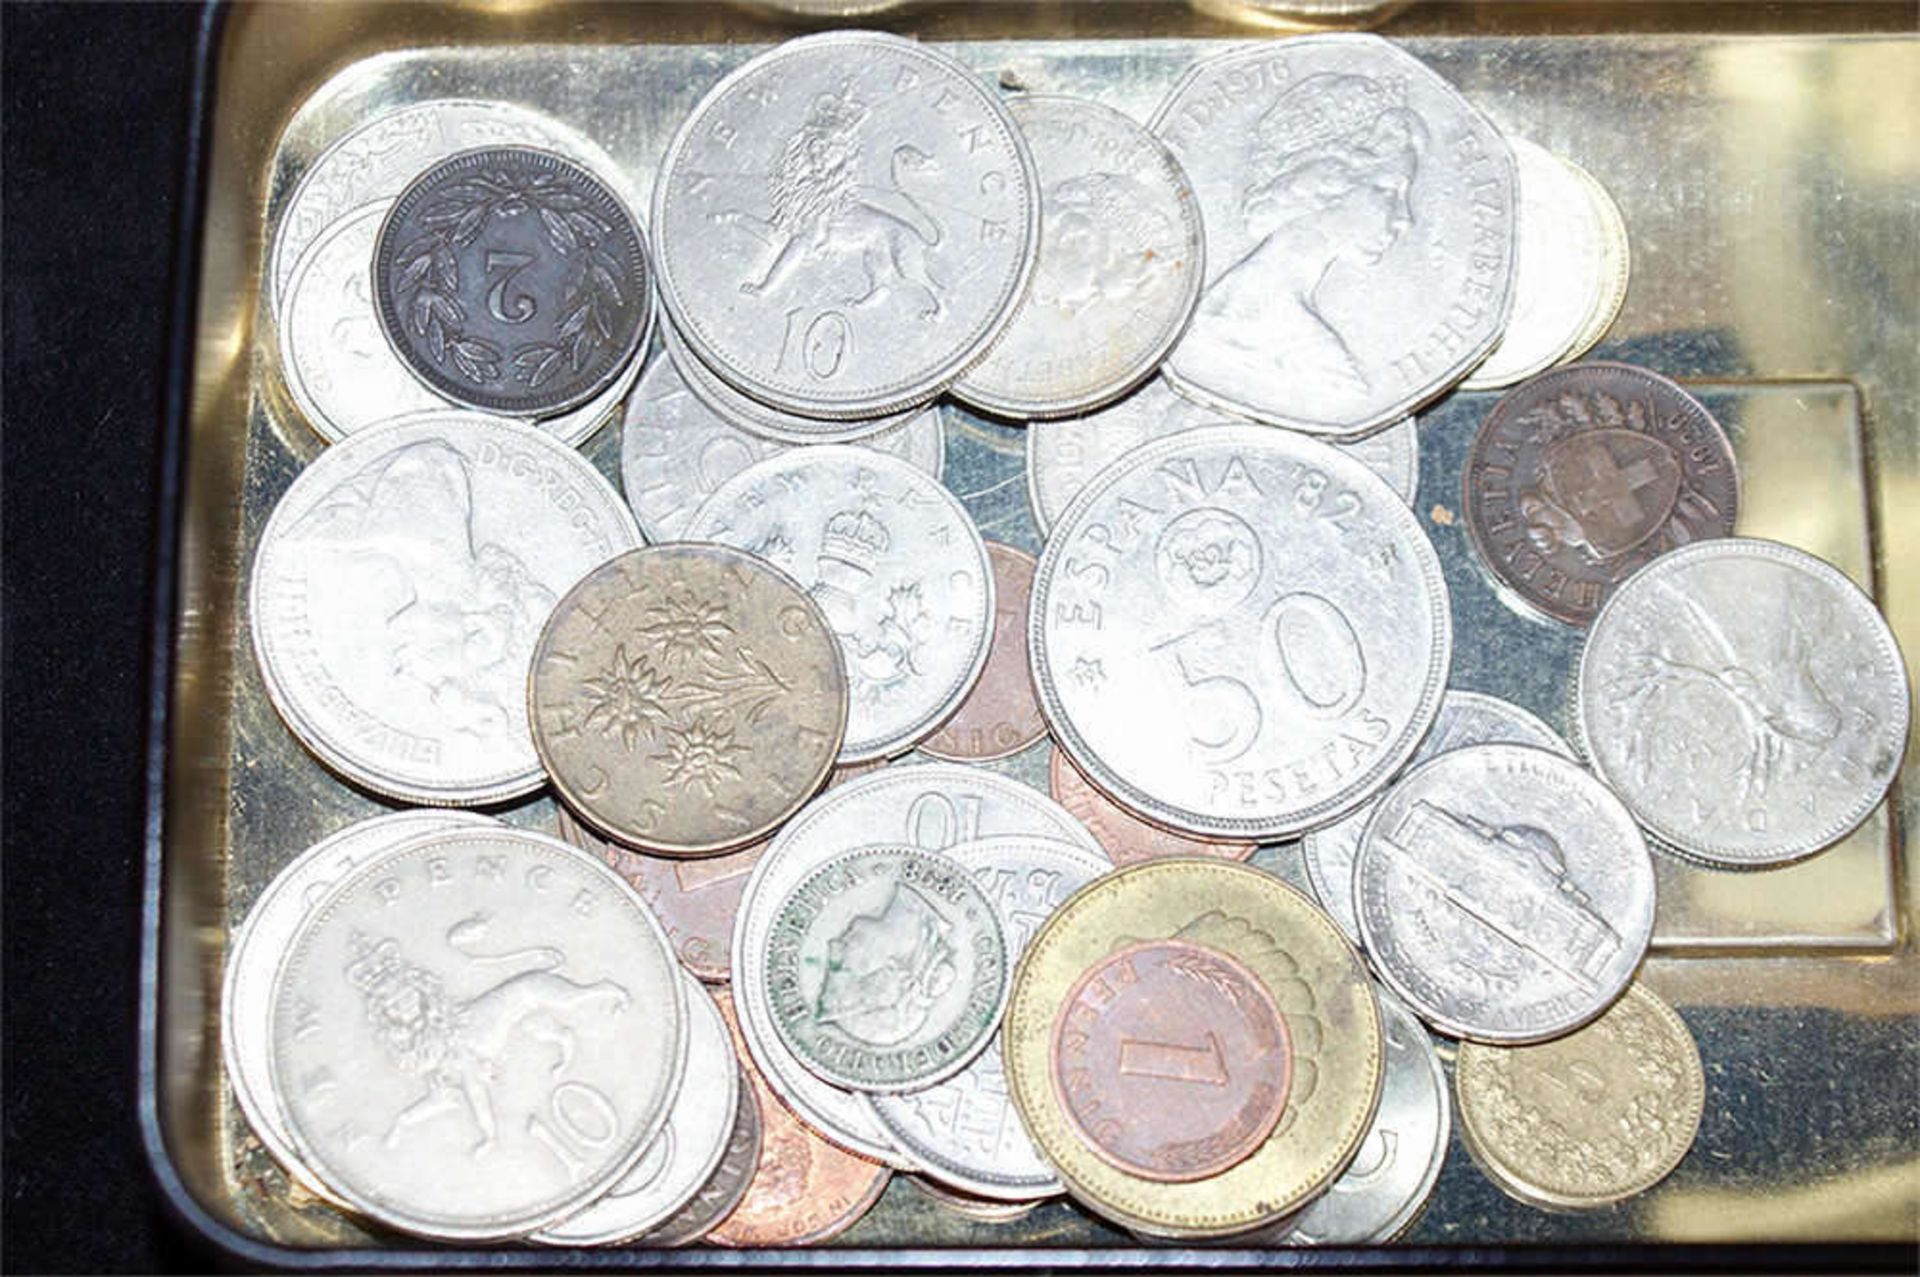 Lot ältere Münzen, dabei z.B. Holland 1736, etc. Schöne Fundgrube. - Bild 2 aus 3